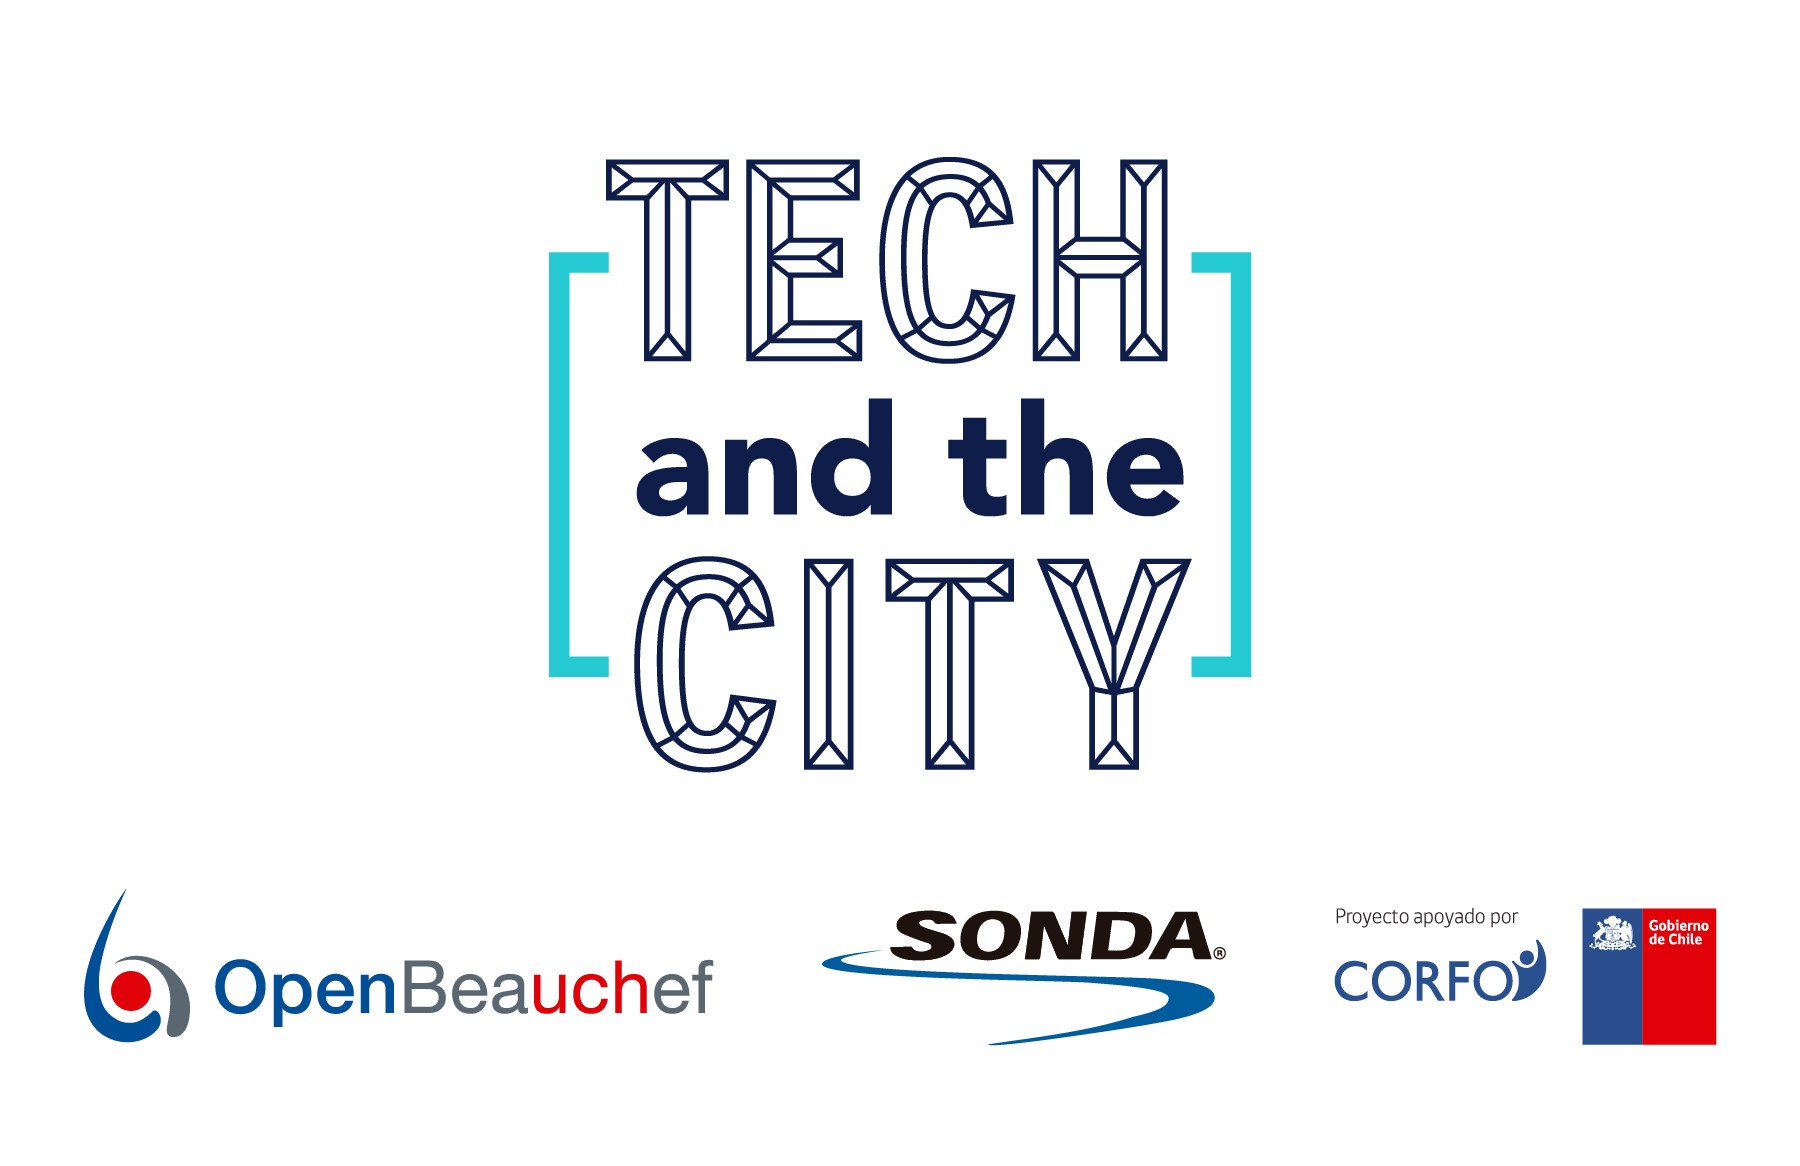 "Tech & The City"